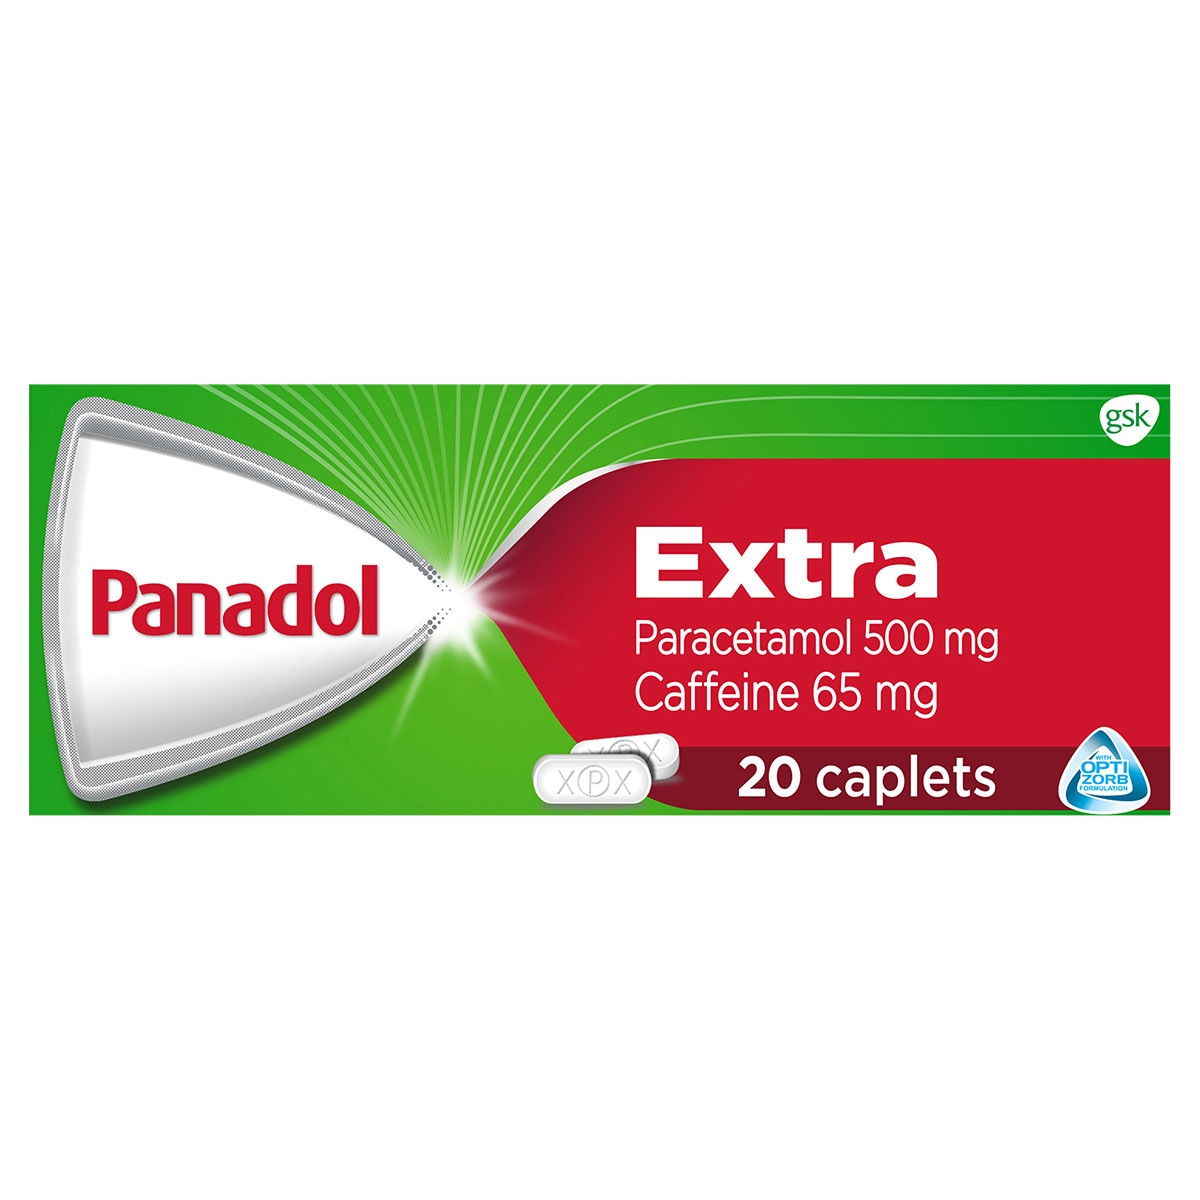 Panadol Extra Optizorb Pain Relief 20 Caplets